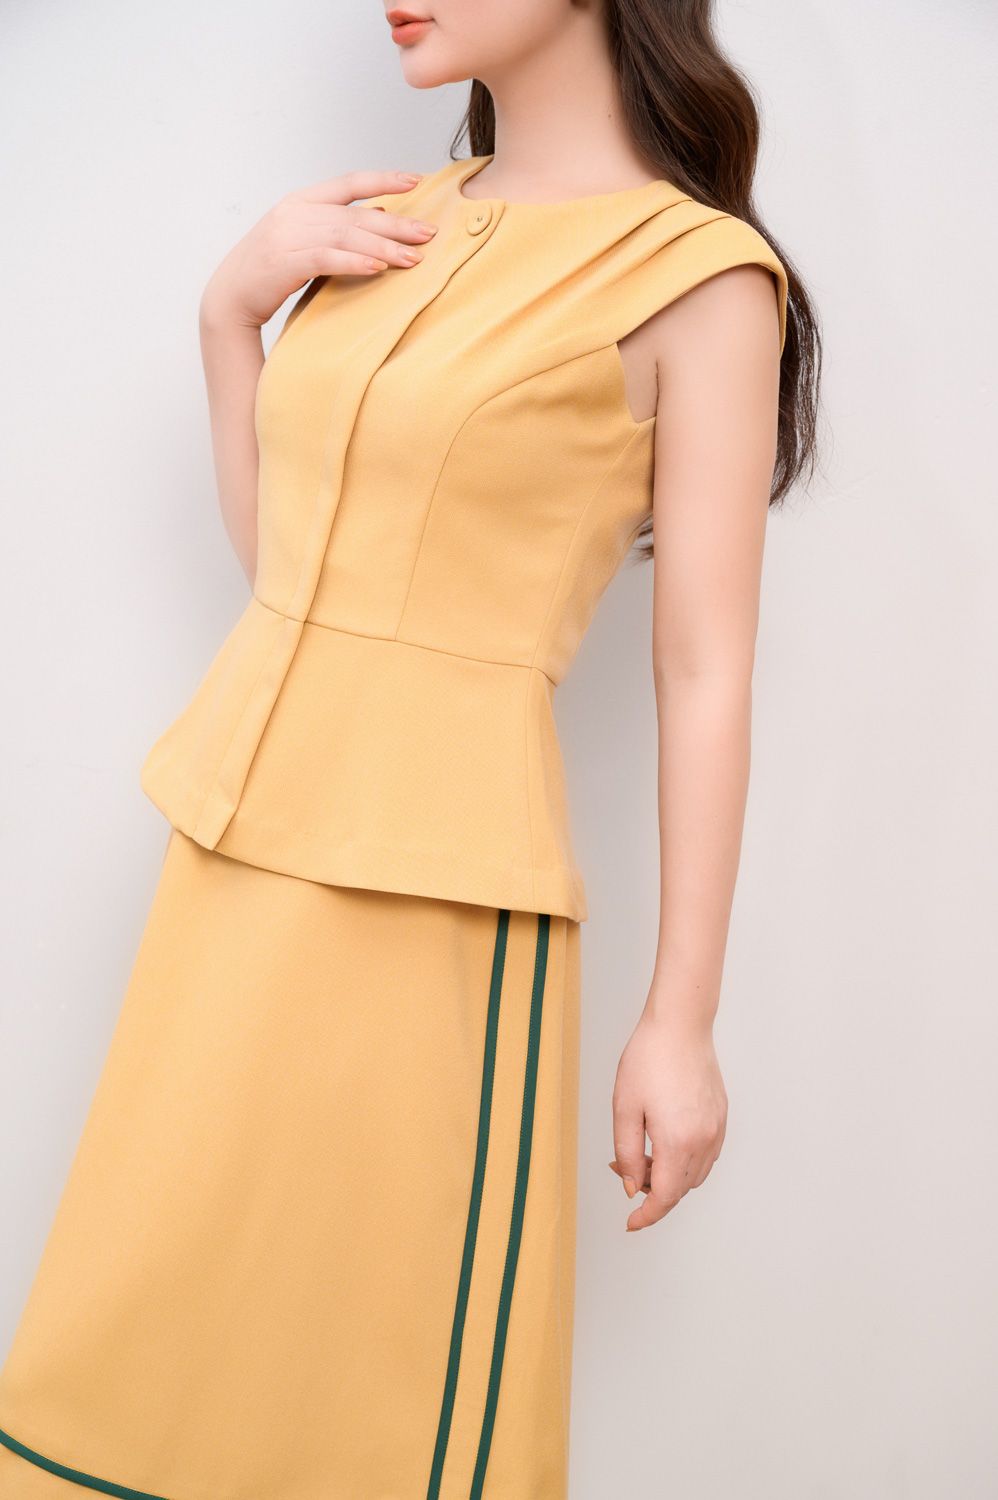 Đầm nữ thương hiệu Đầm Váy Mina thiết kế dáng xoè vạt chéo chất liệu Cotton  dự tiệc, công sở - MN210 - Tìm Voucher